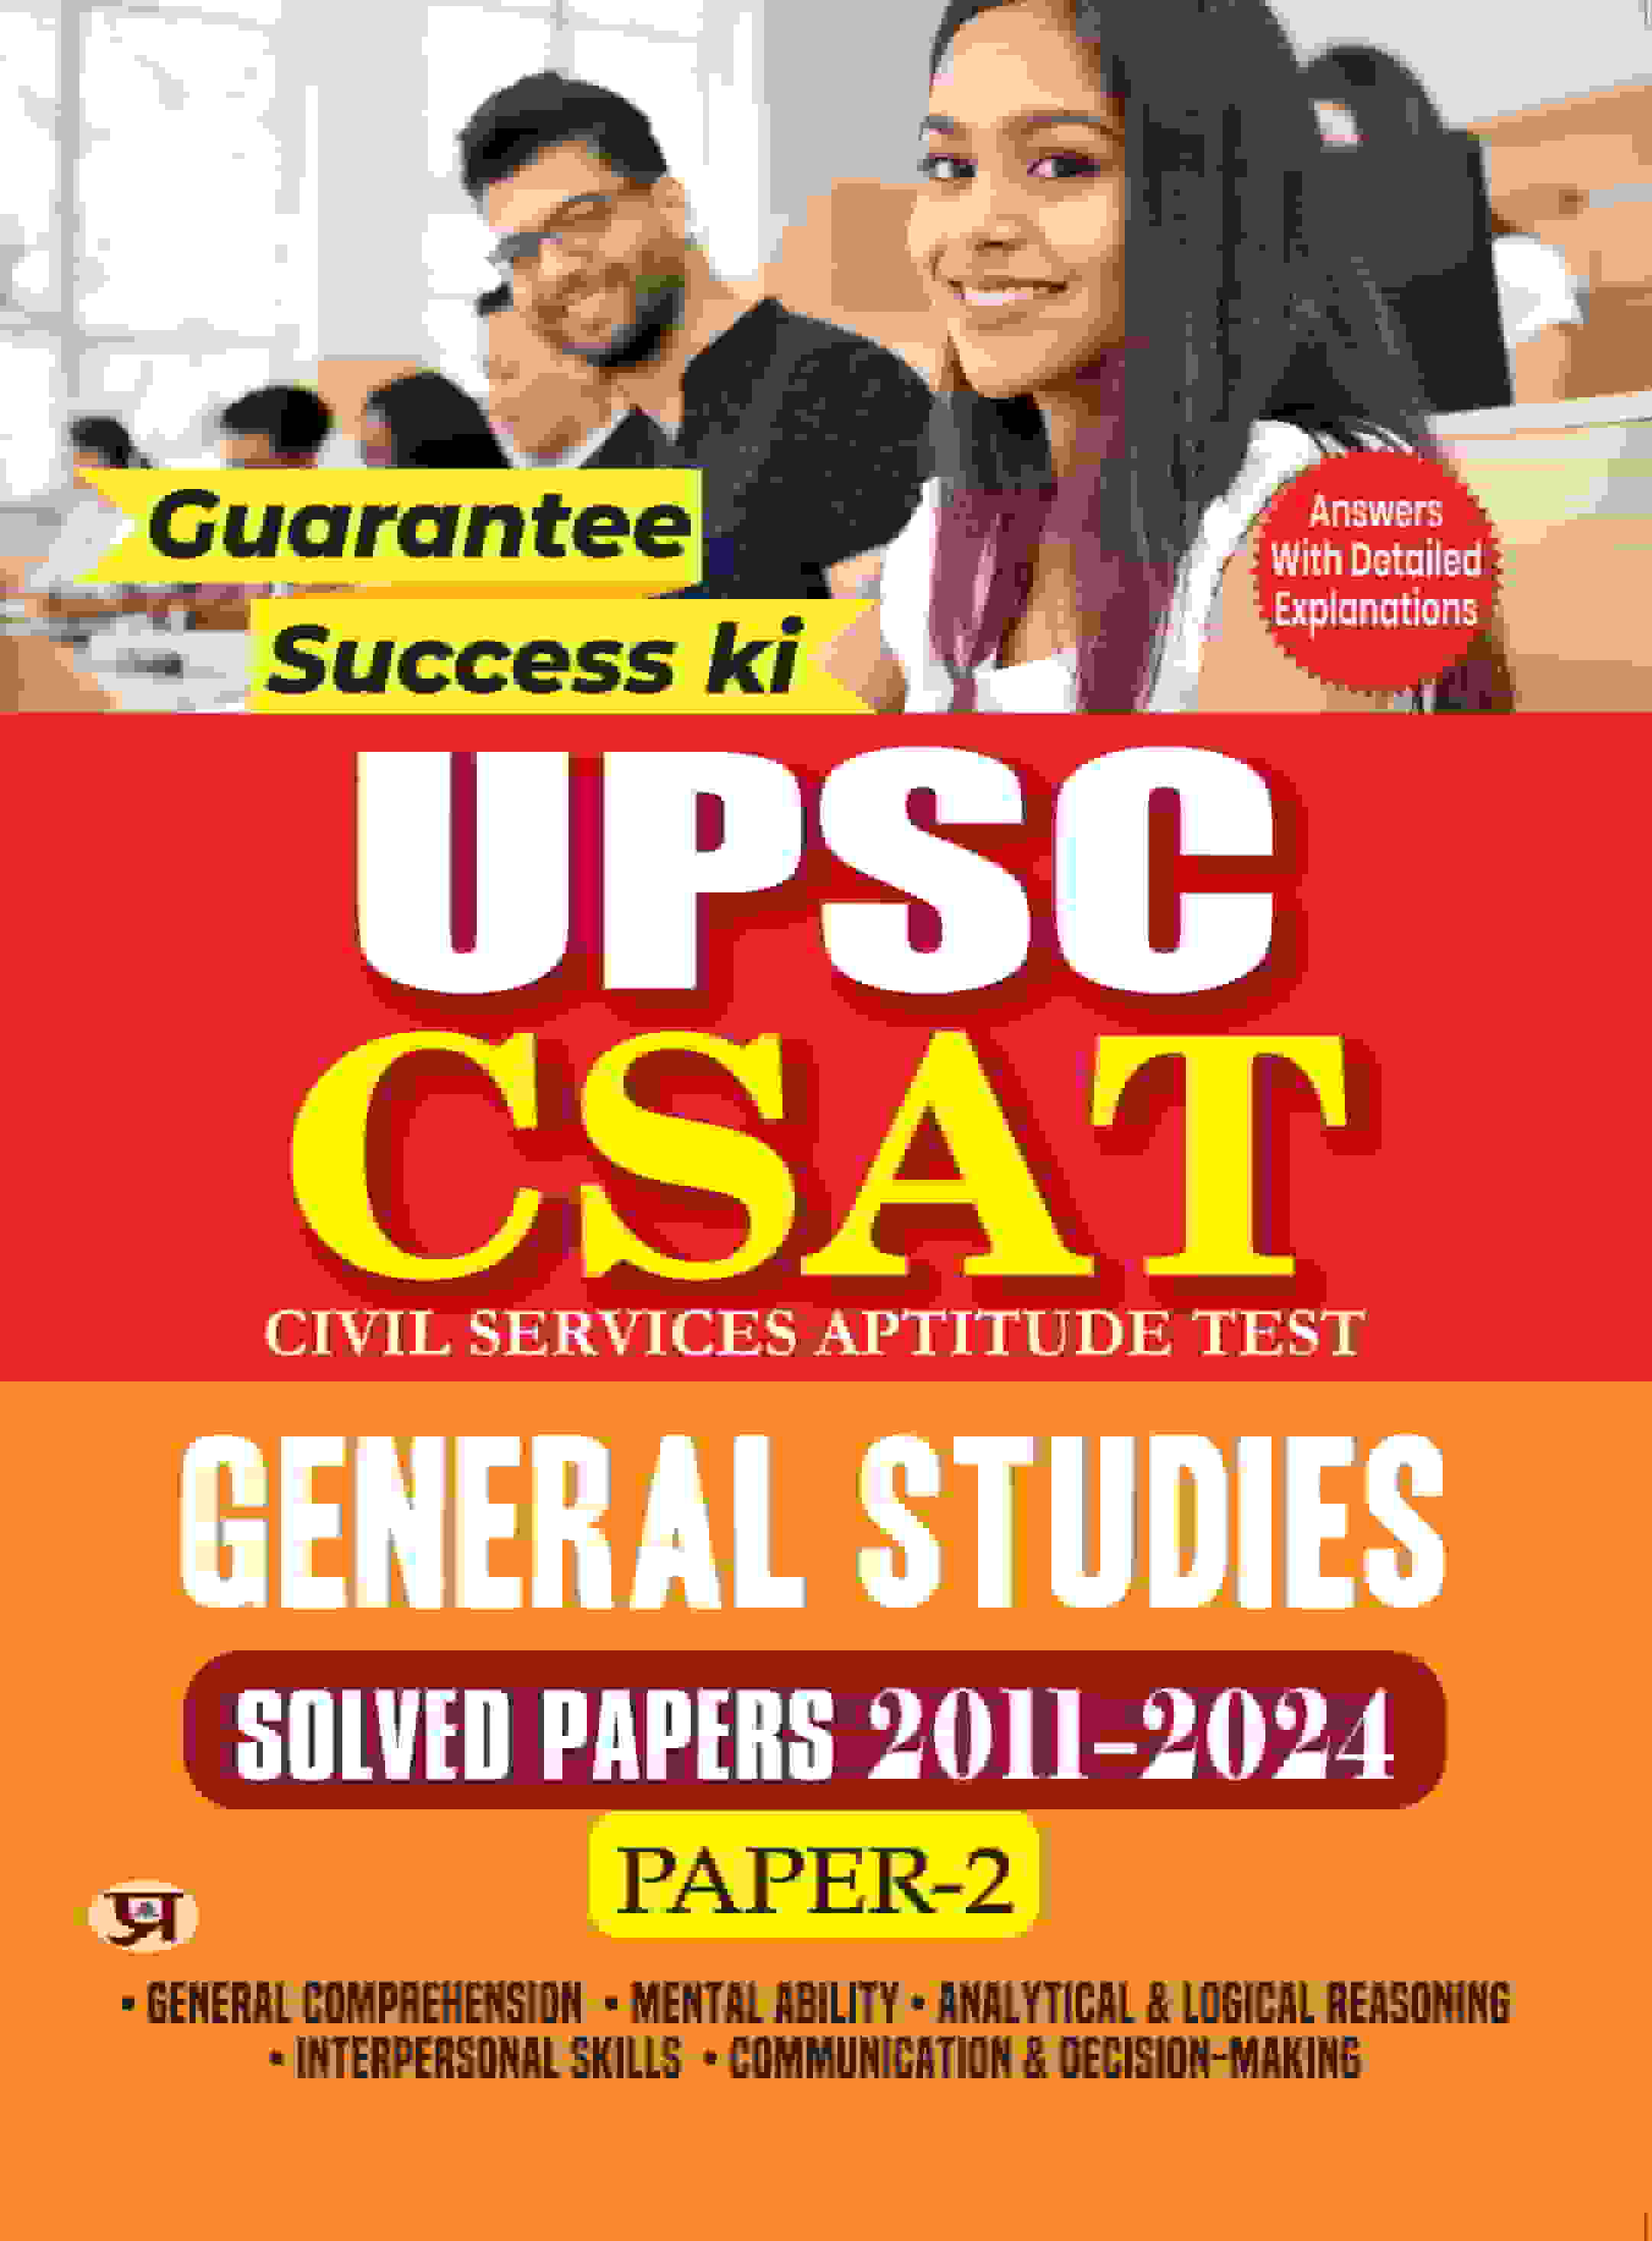 UPSC CSAT Civil Services Aptitude Test General Studies Paper-2 Solved Papers 2011-2024